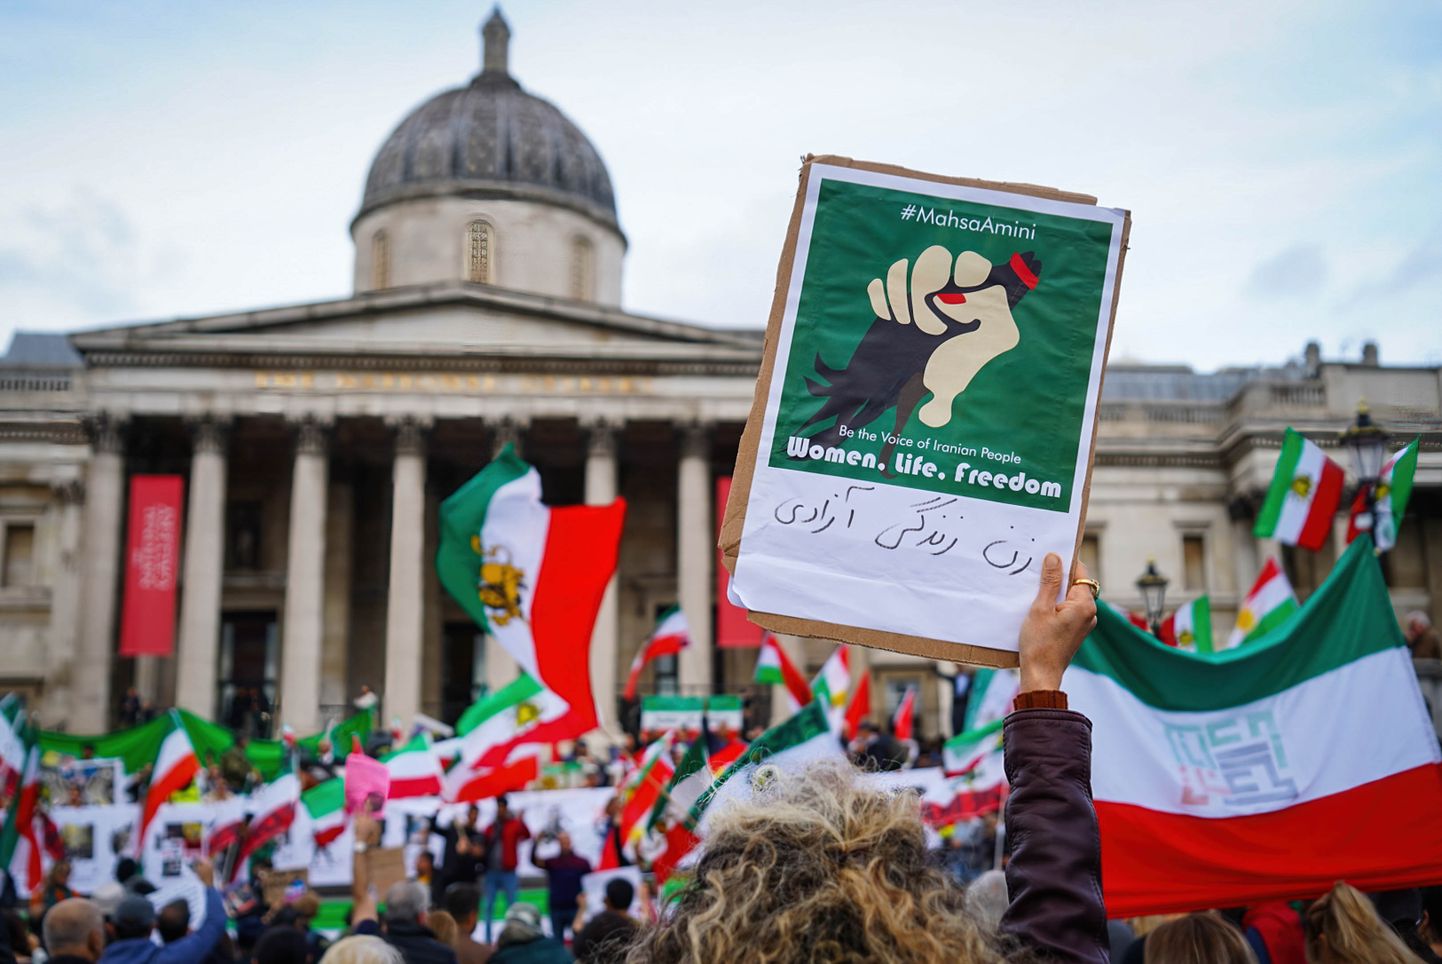 Sajad meeleavaldajad kogunesid oktoobris Londonis Trafalgari väljakule, et avaldada toetust Iraani naistele.